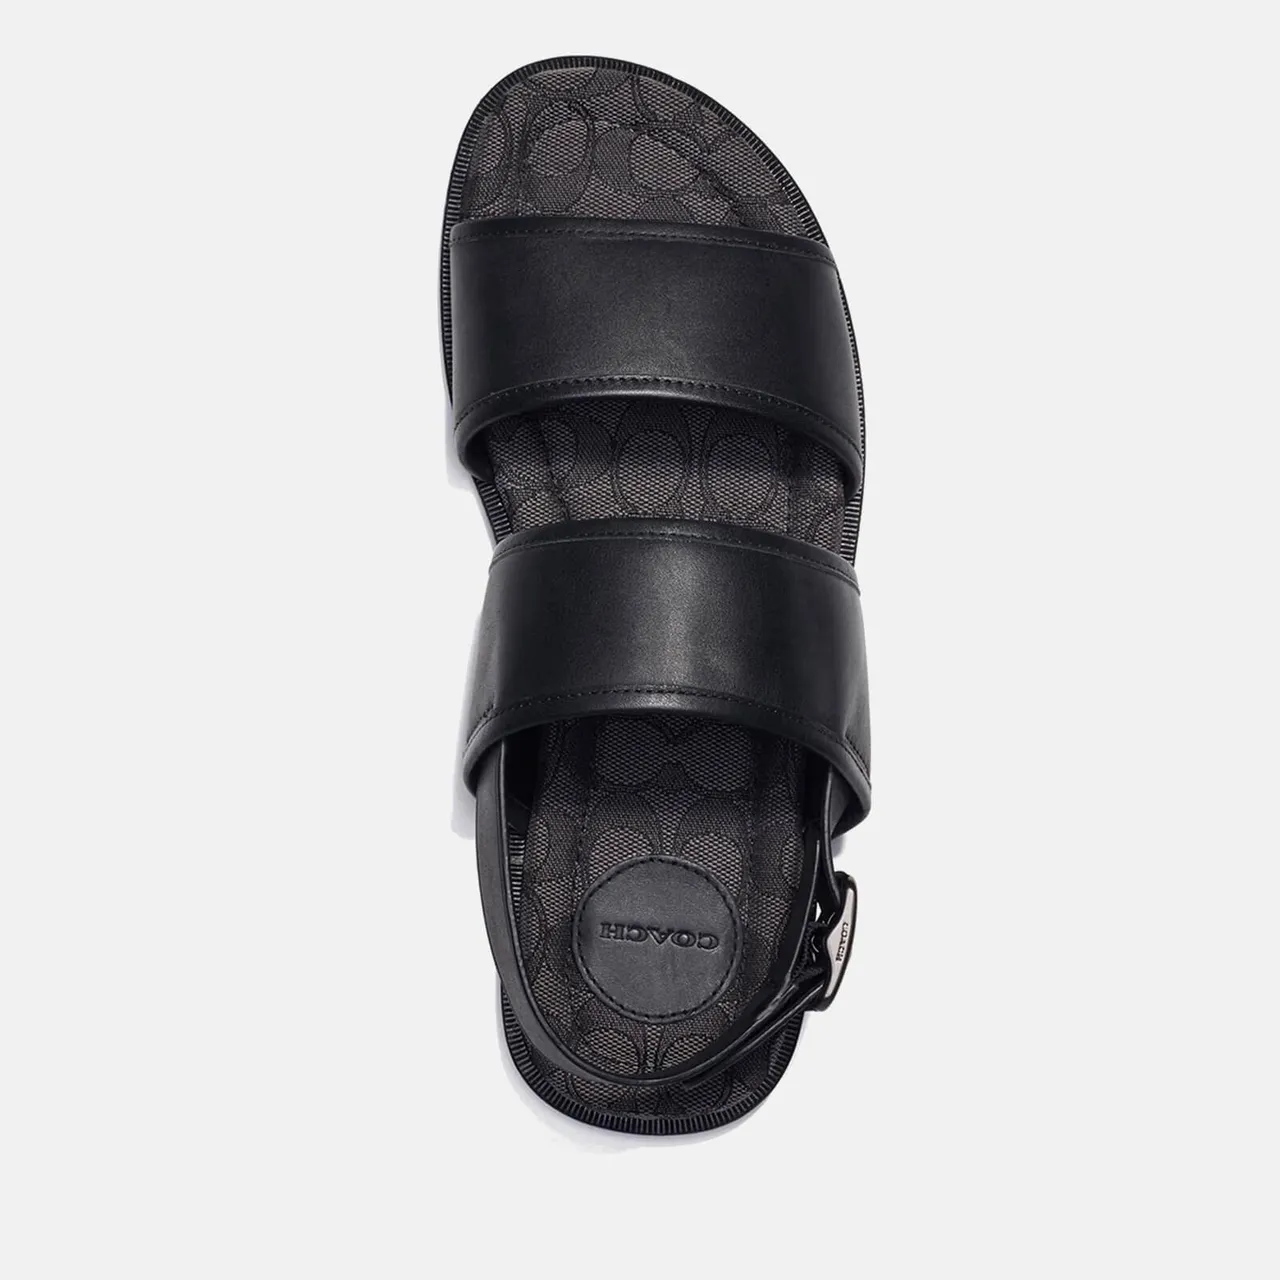 Coach Men's Leather Sandals - UK